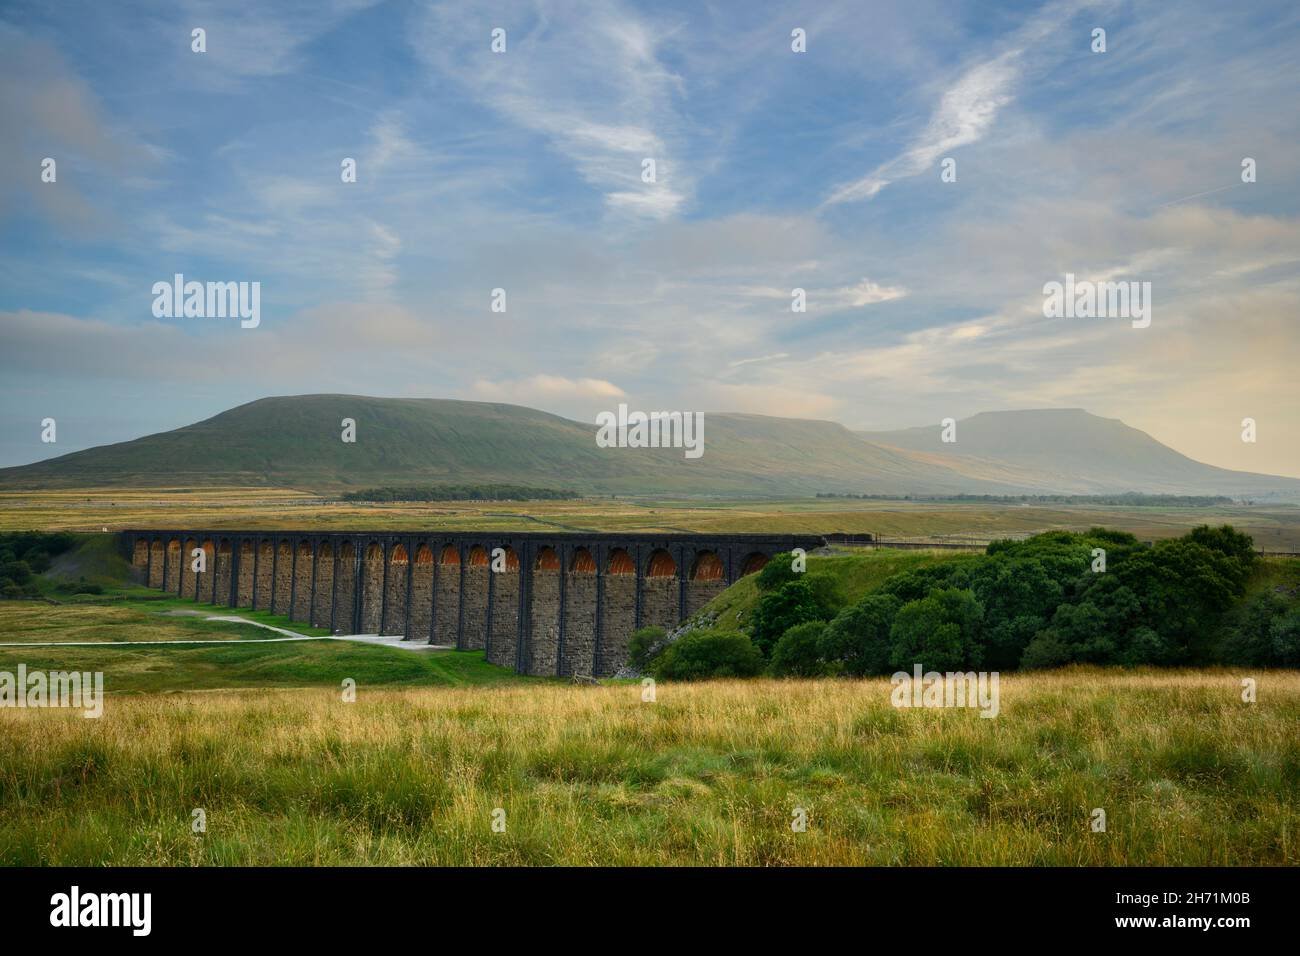 Campagne pittoresque (site historique de Ribblehead Viaduc dans la vallée, lumière du soleil sur les arches, massif et collines) - North Yorkshire Dales, Angleterre Royaume-Uni. Banque D'Images